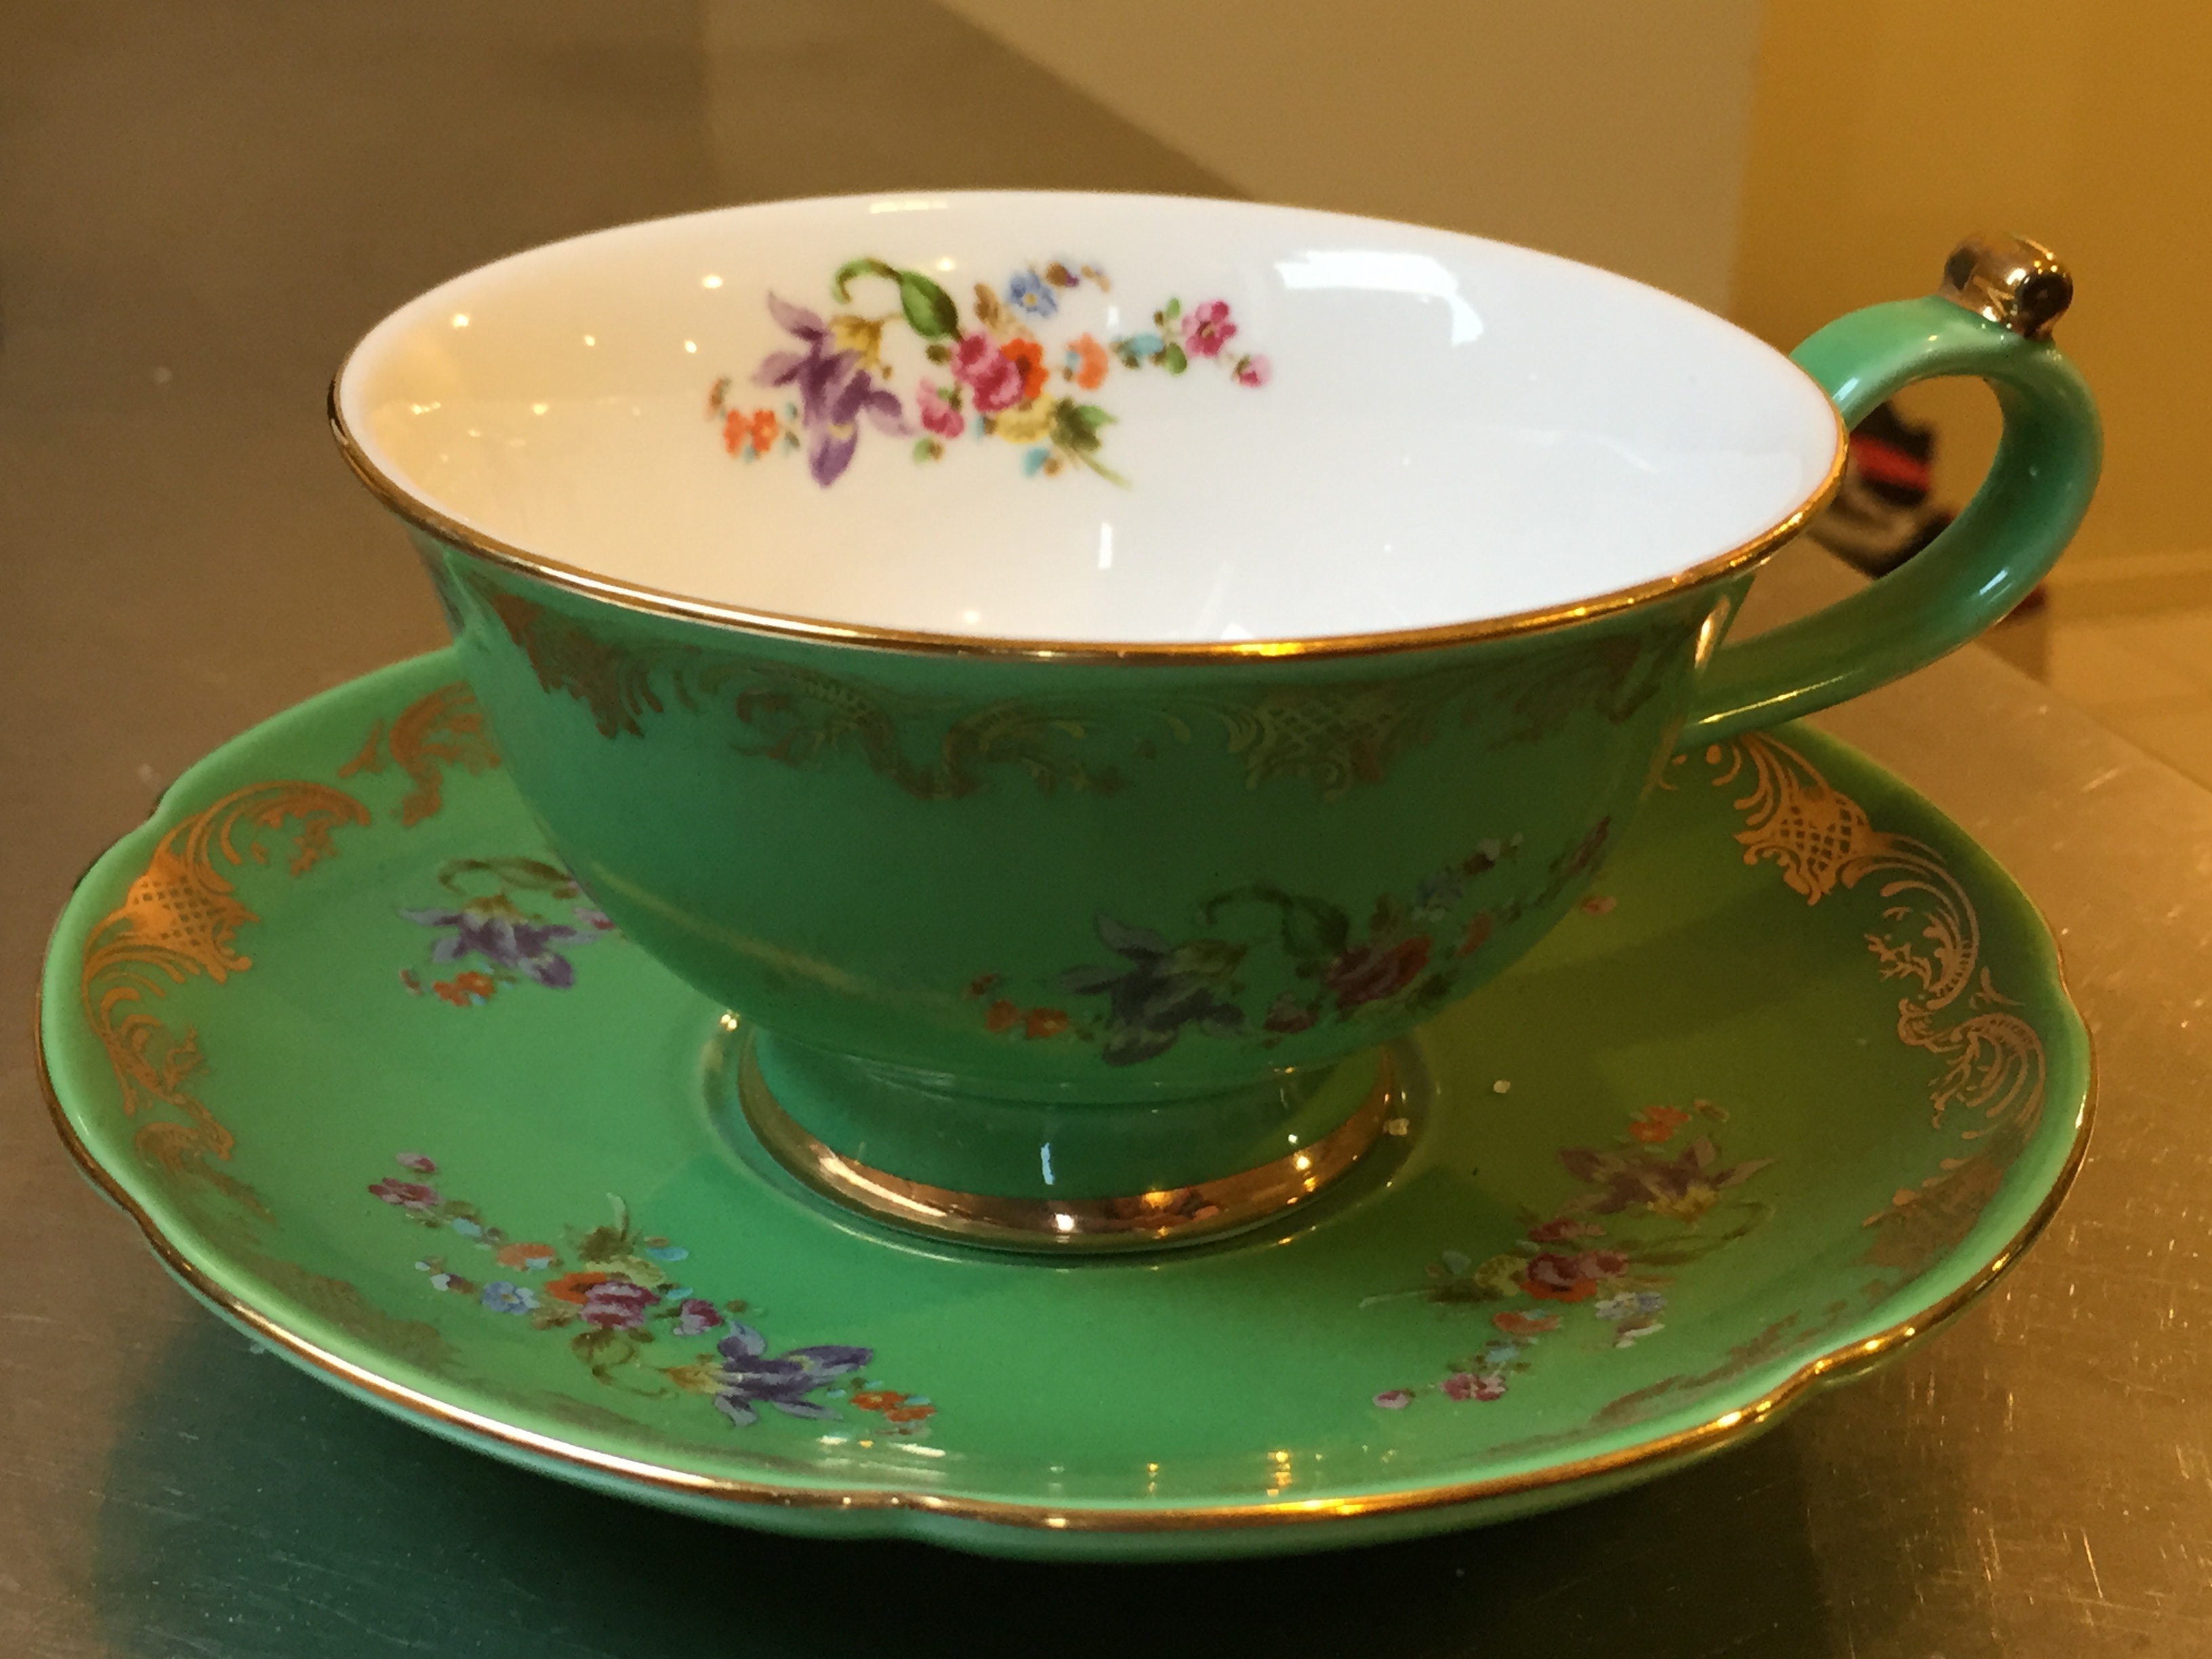 Blog - Tea Cup & Saucer from Dry & Tea | Urban Gourmet